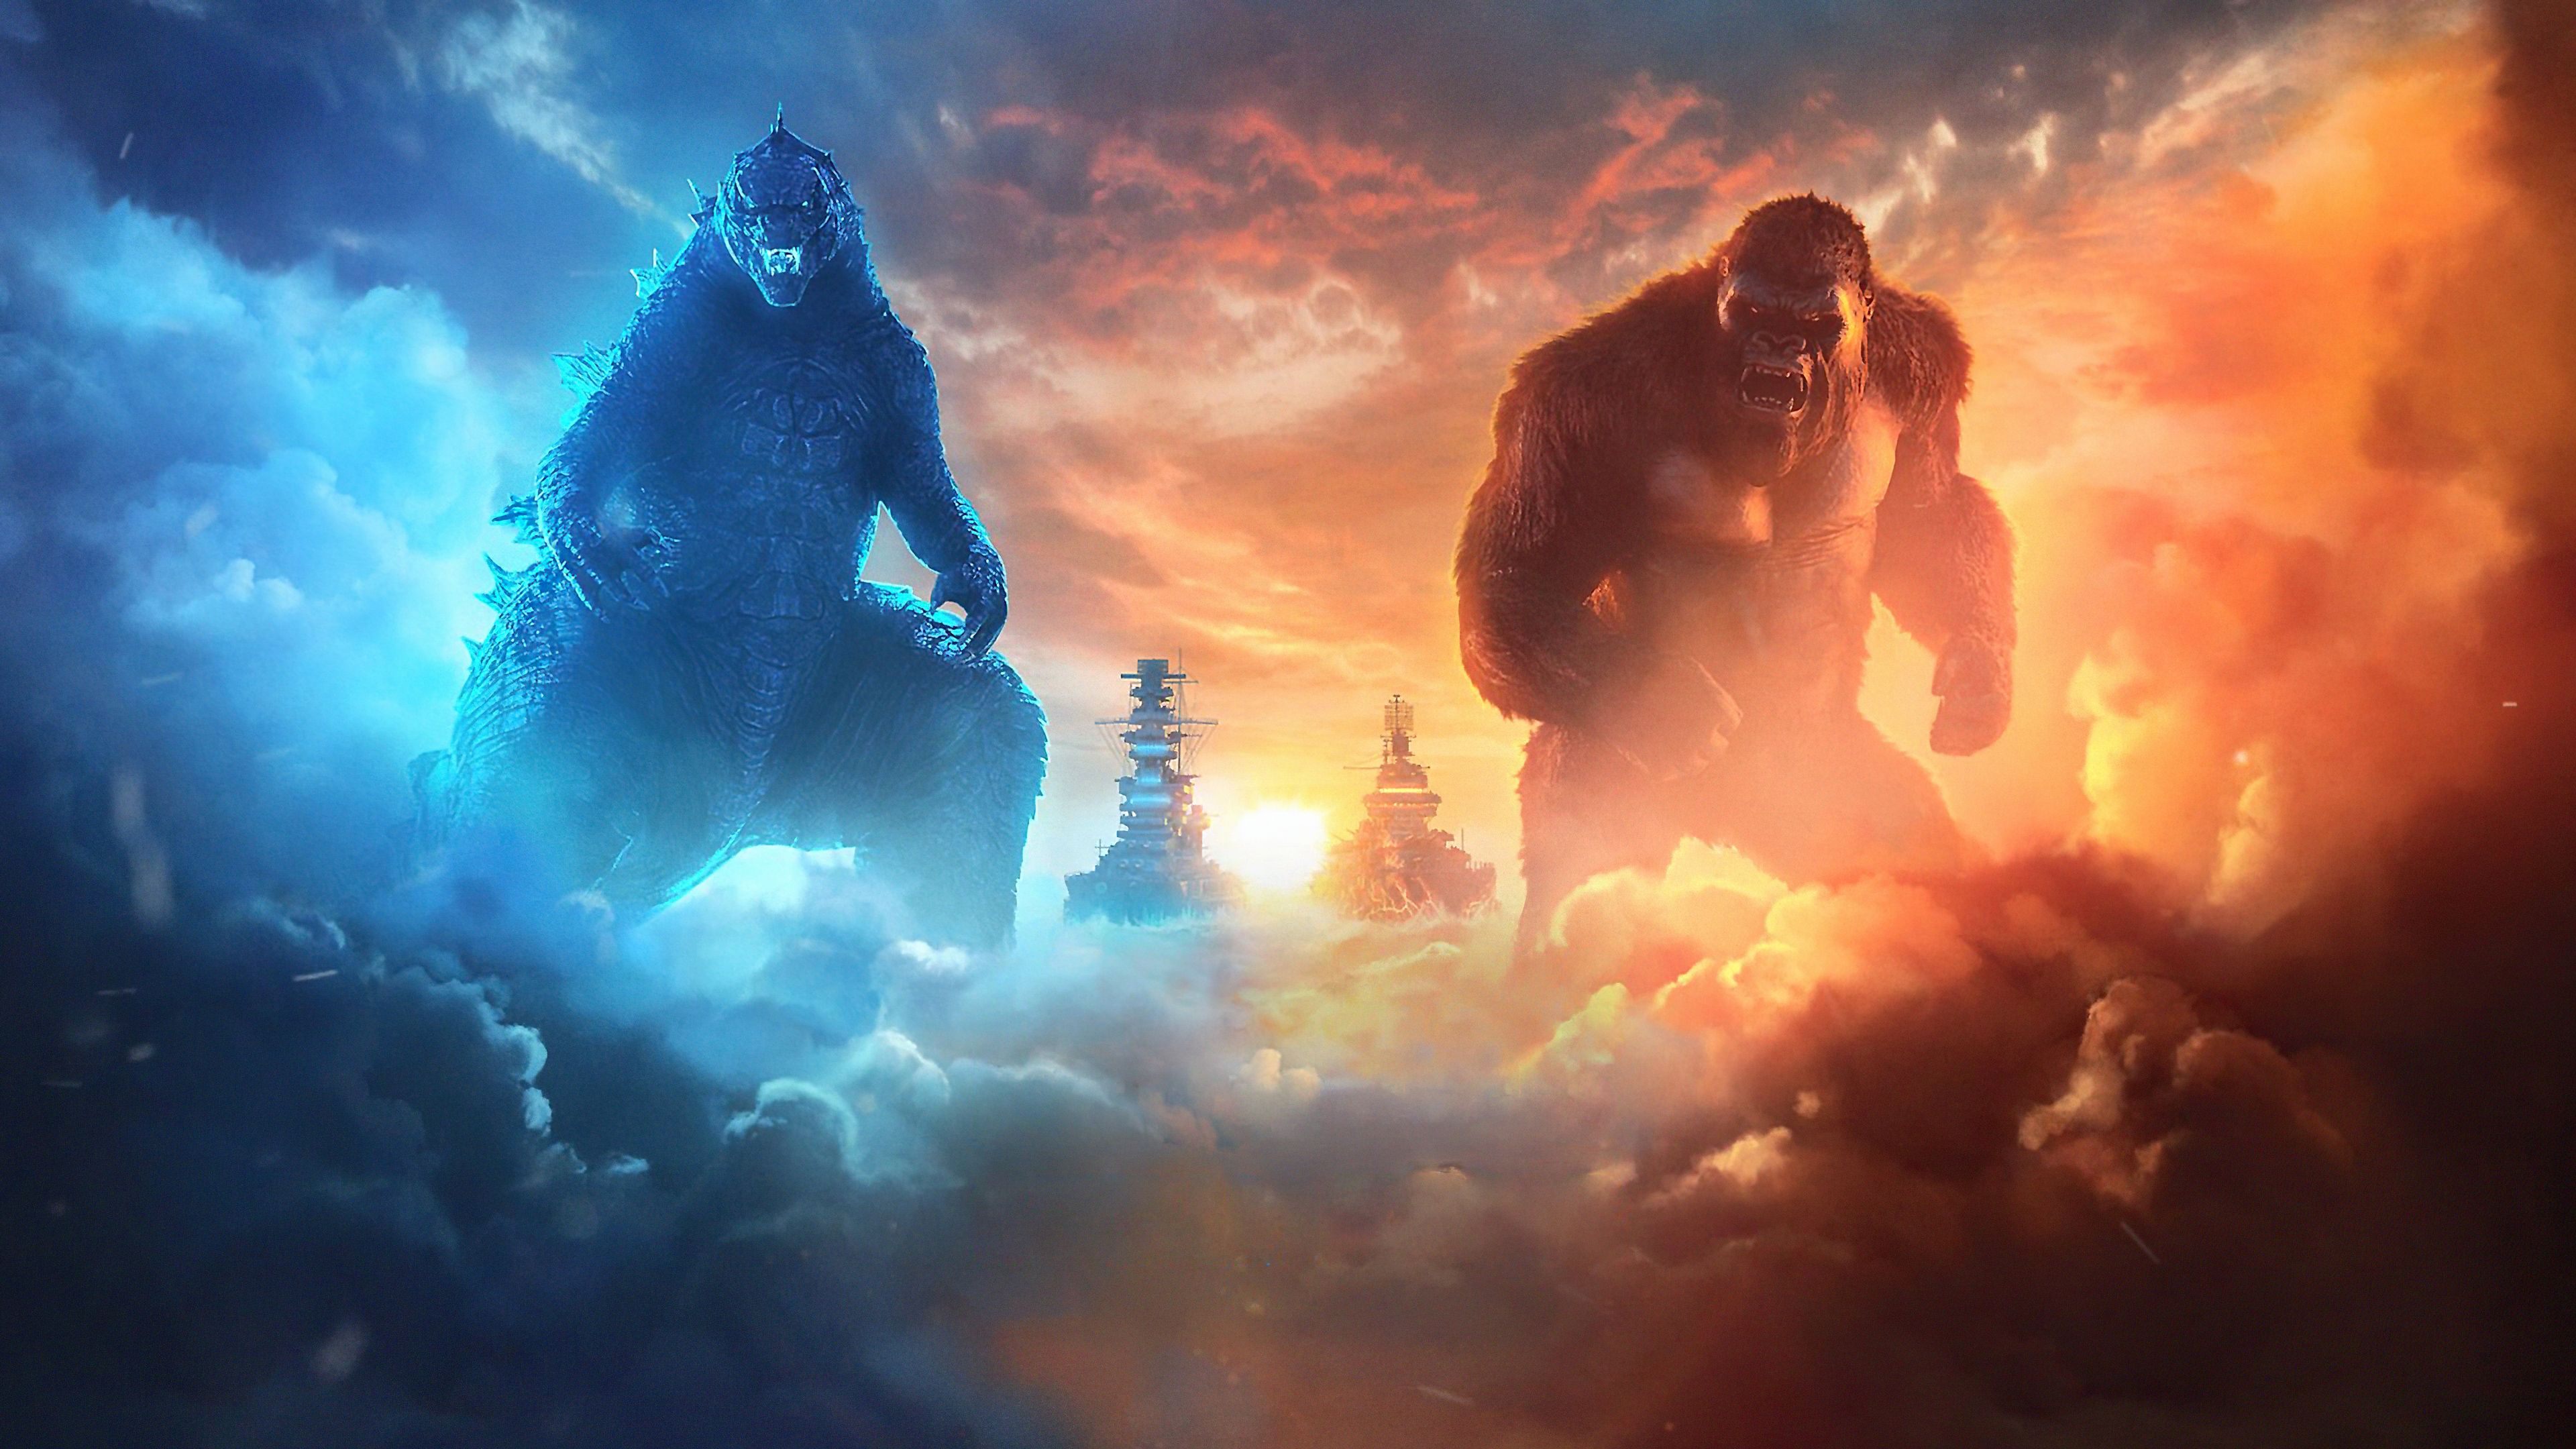 Godzilla Vs Kong Wallpaper 4k hd, picture, image